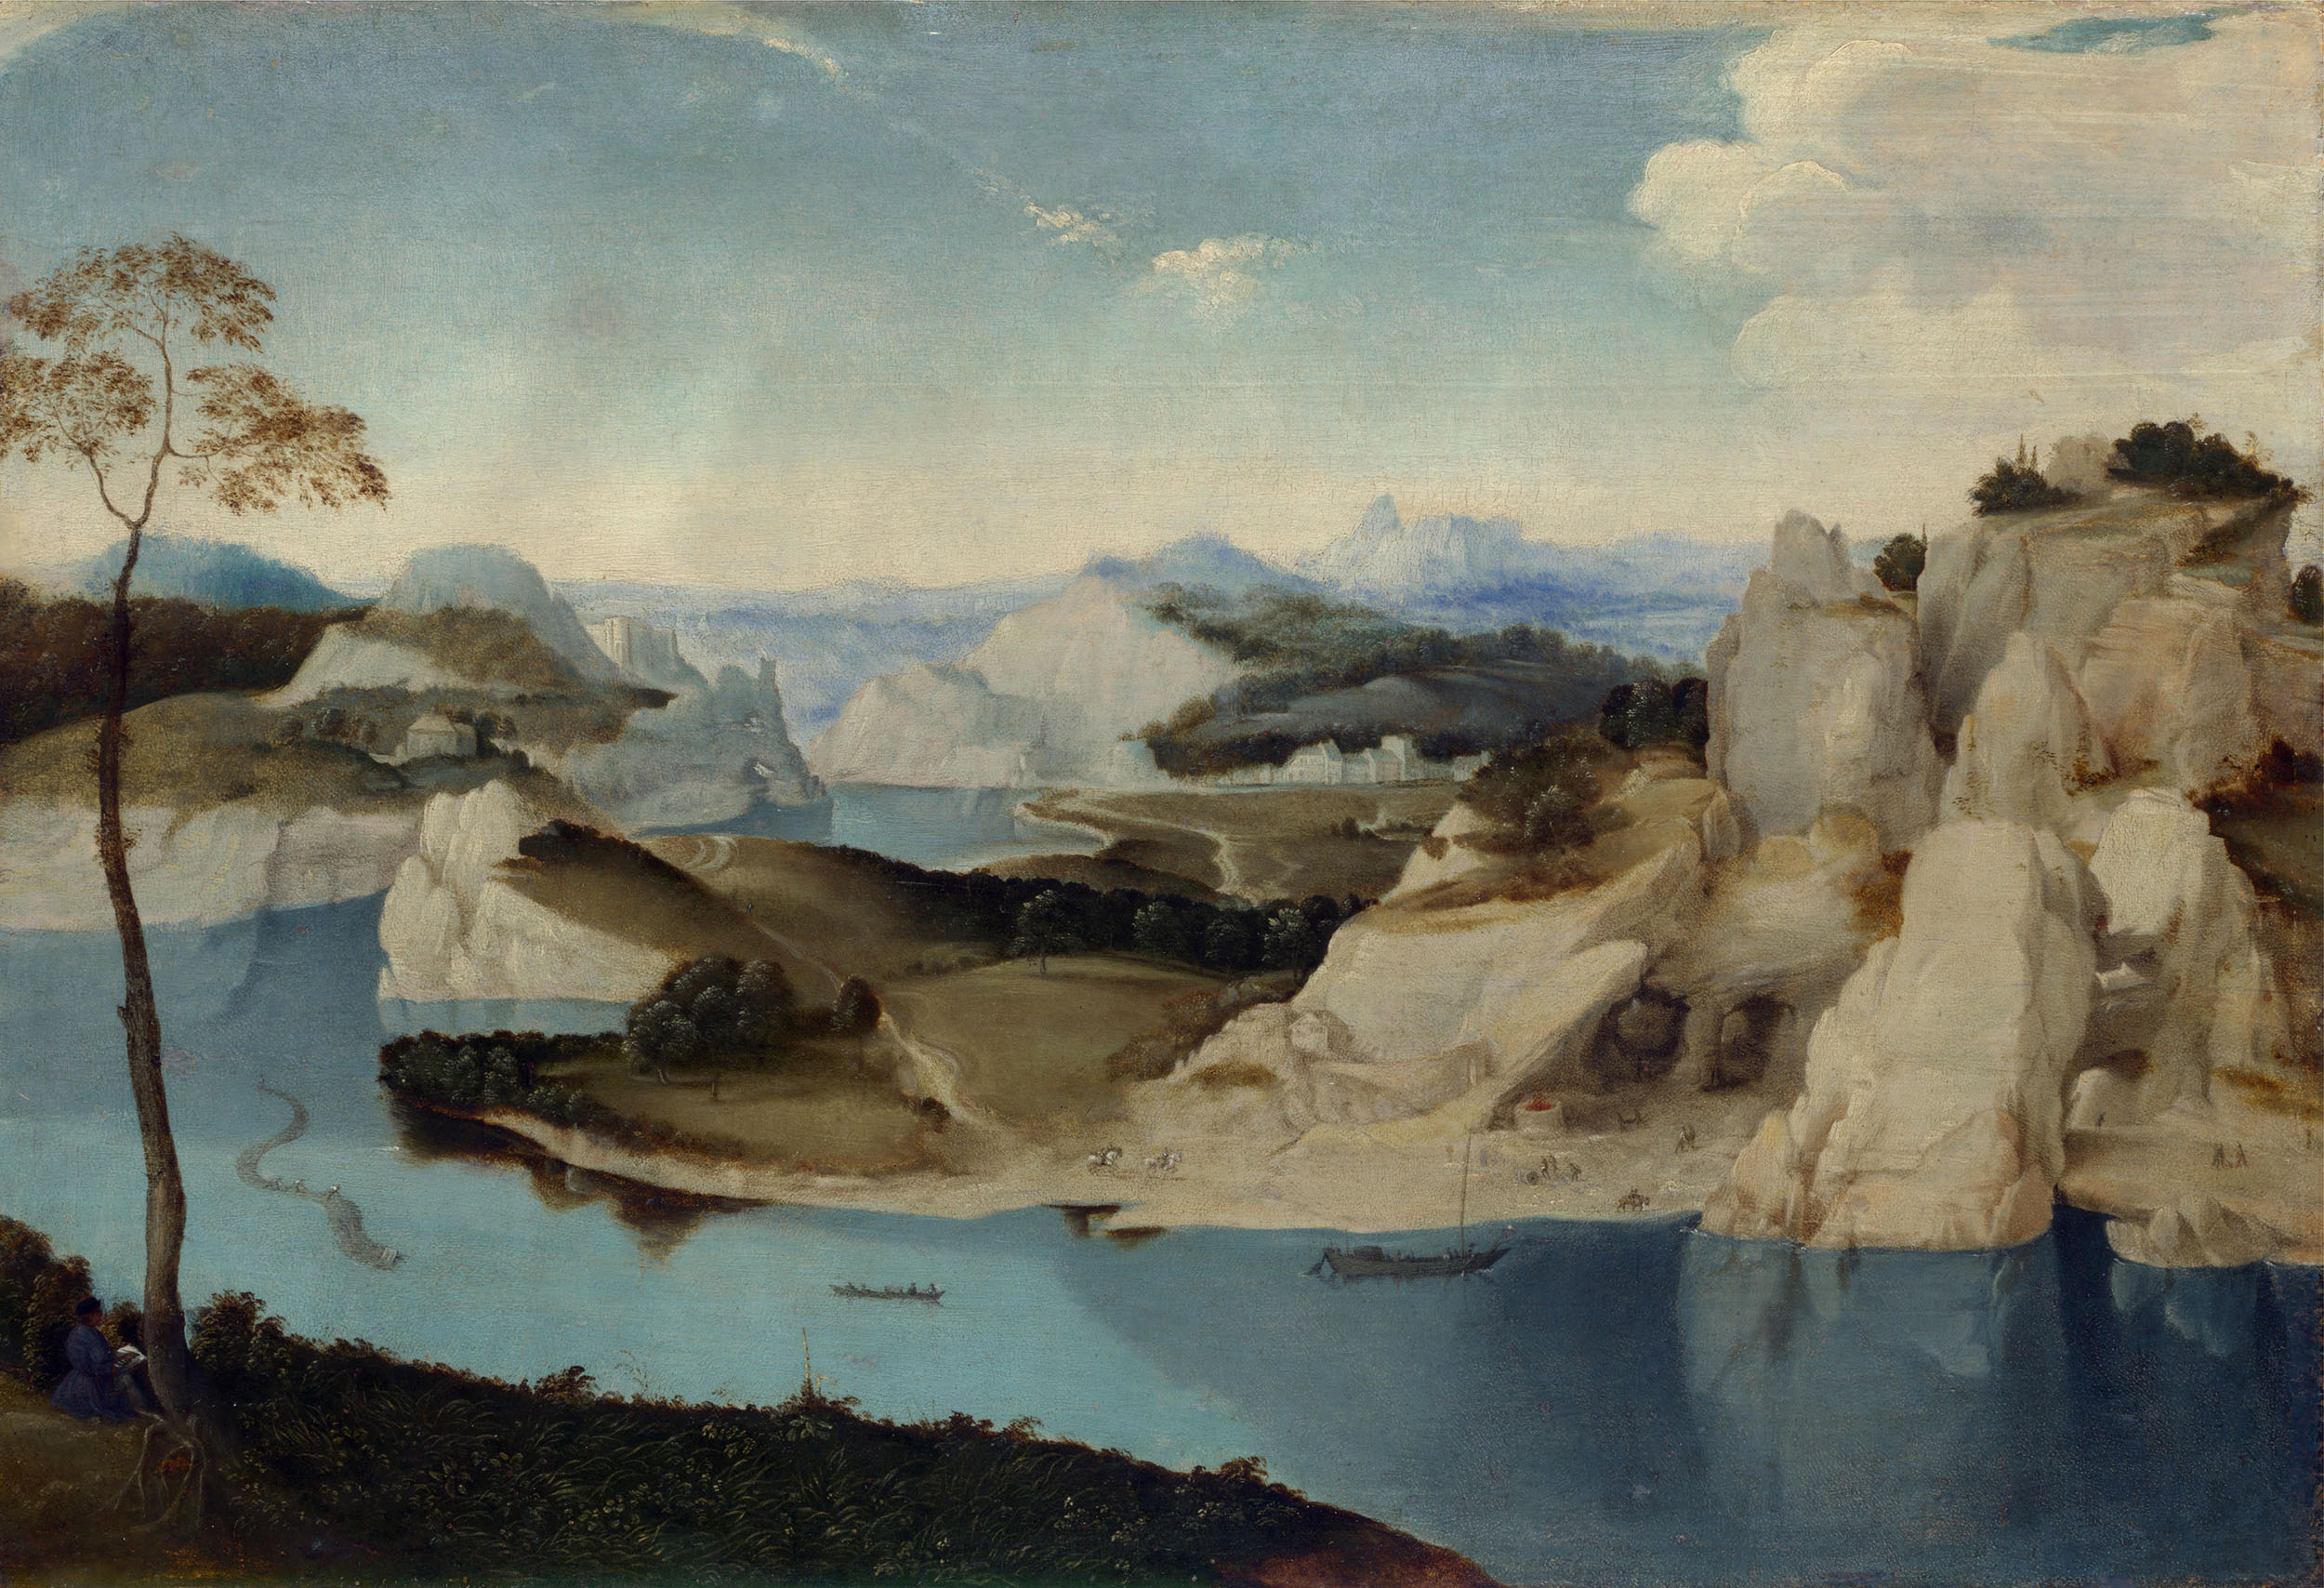 Неизвестный художник. Стиль Питера Брейгеля Старшего. "Река среди гор". Около 1600.